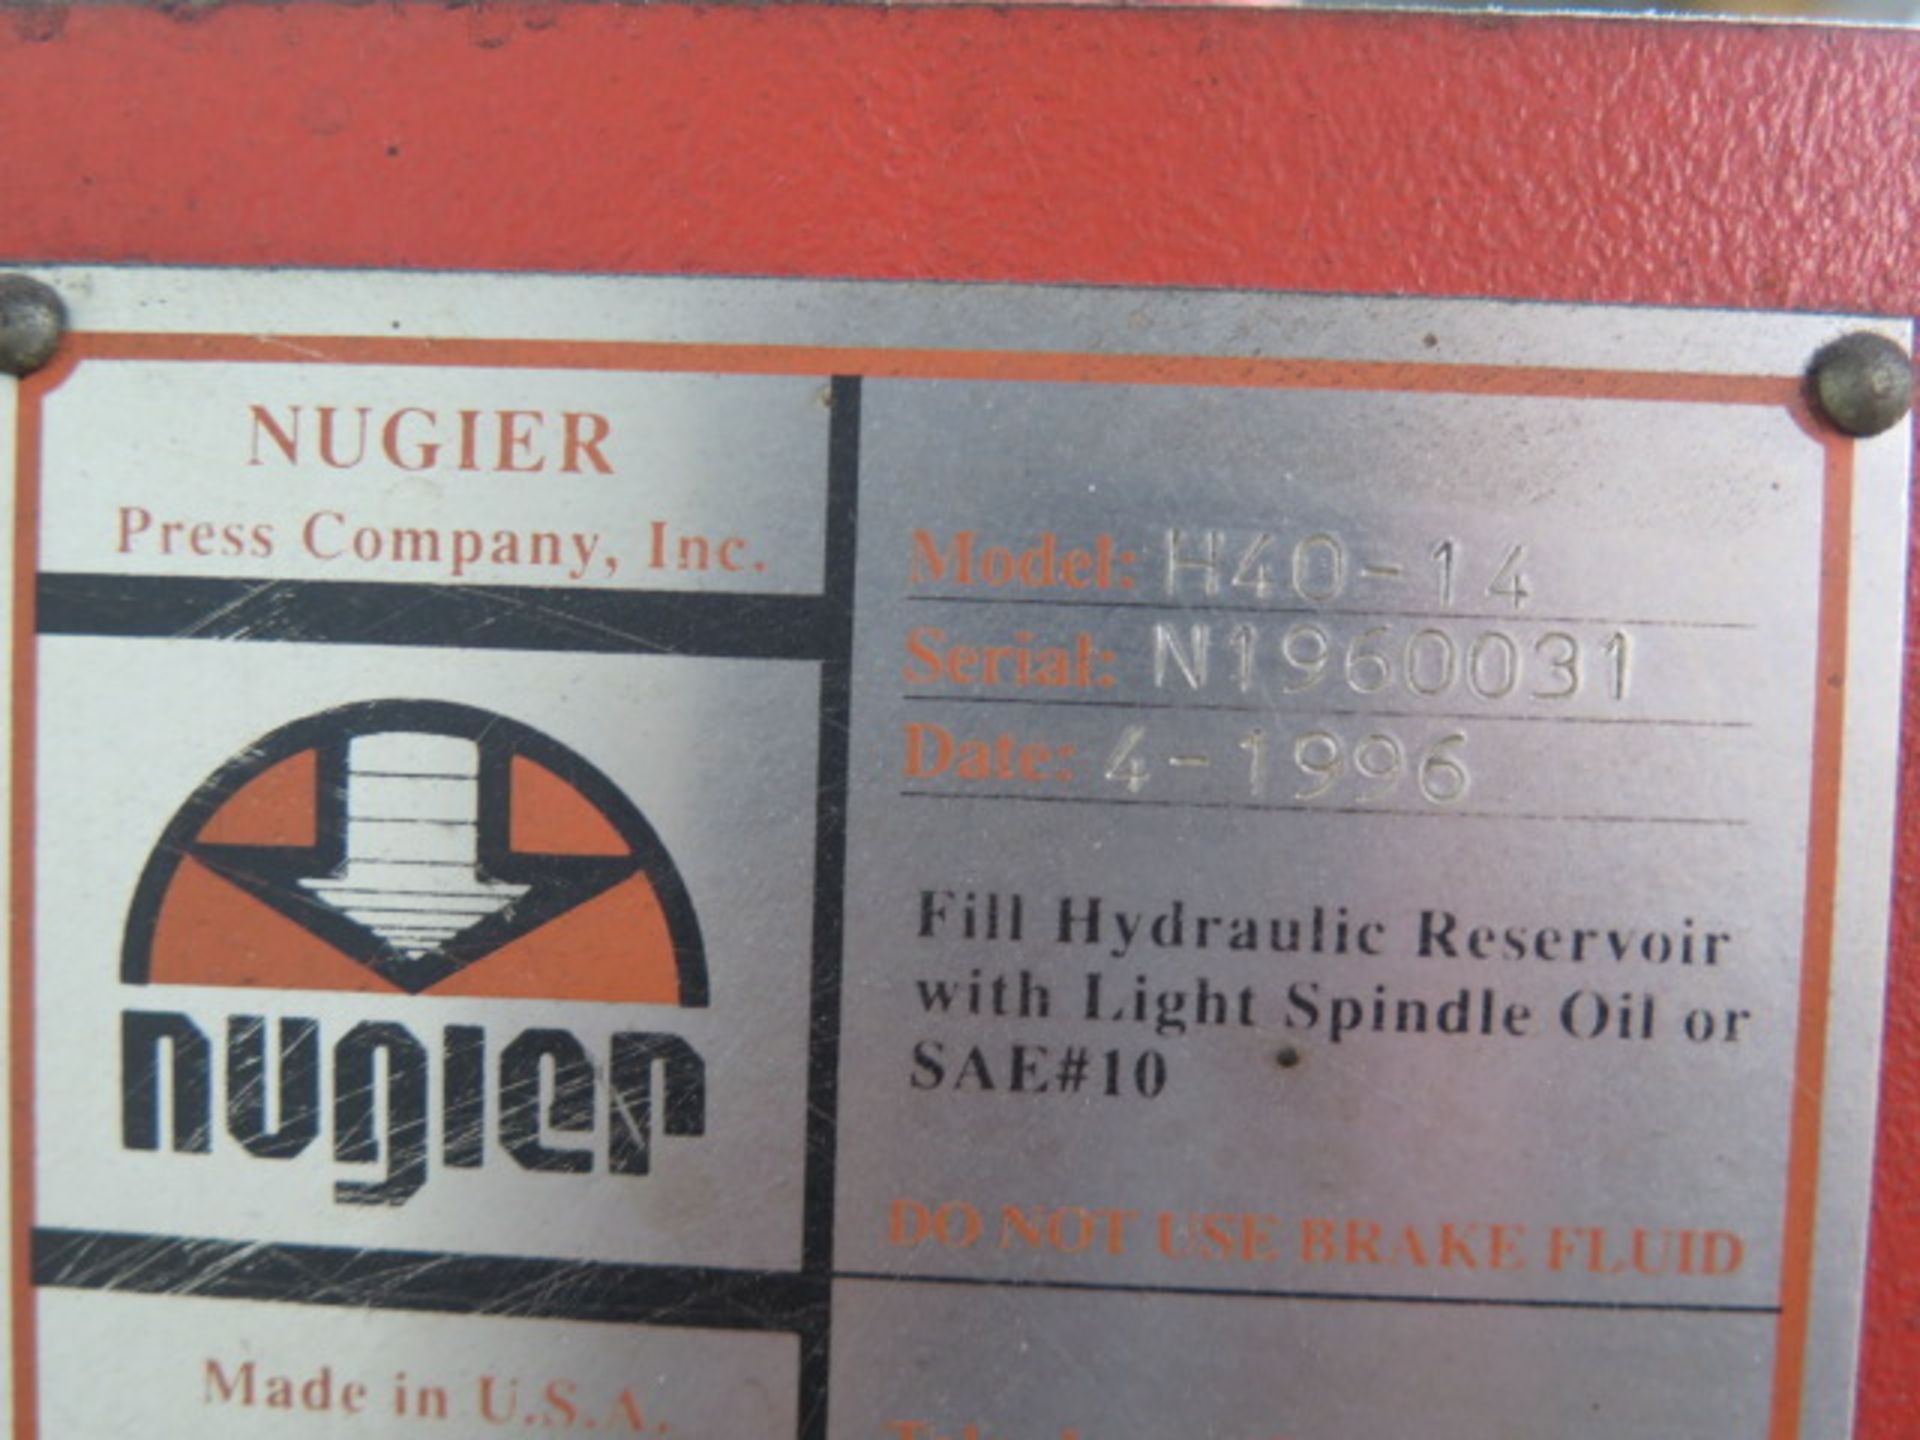 Nugier H40-14 40-Ton Hydraulic H-Frame Press s/n N1960031 w/ Enerpac Electric Hydraulic Unit - Image 8 of 8